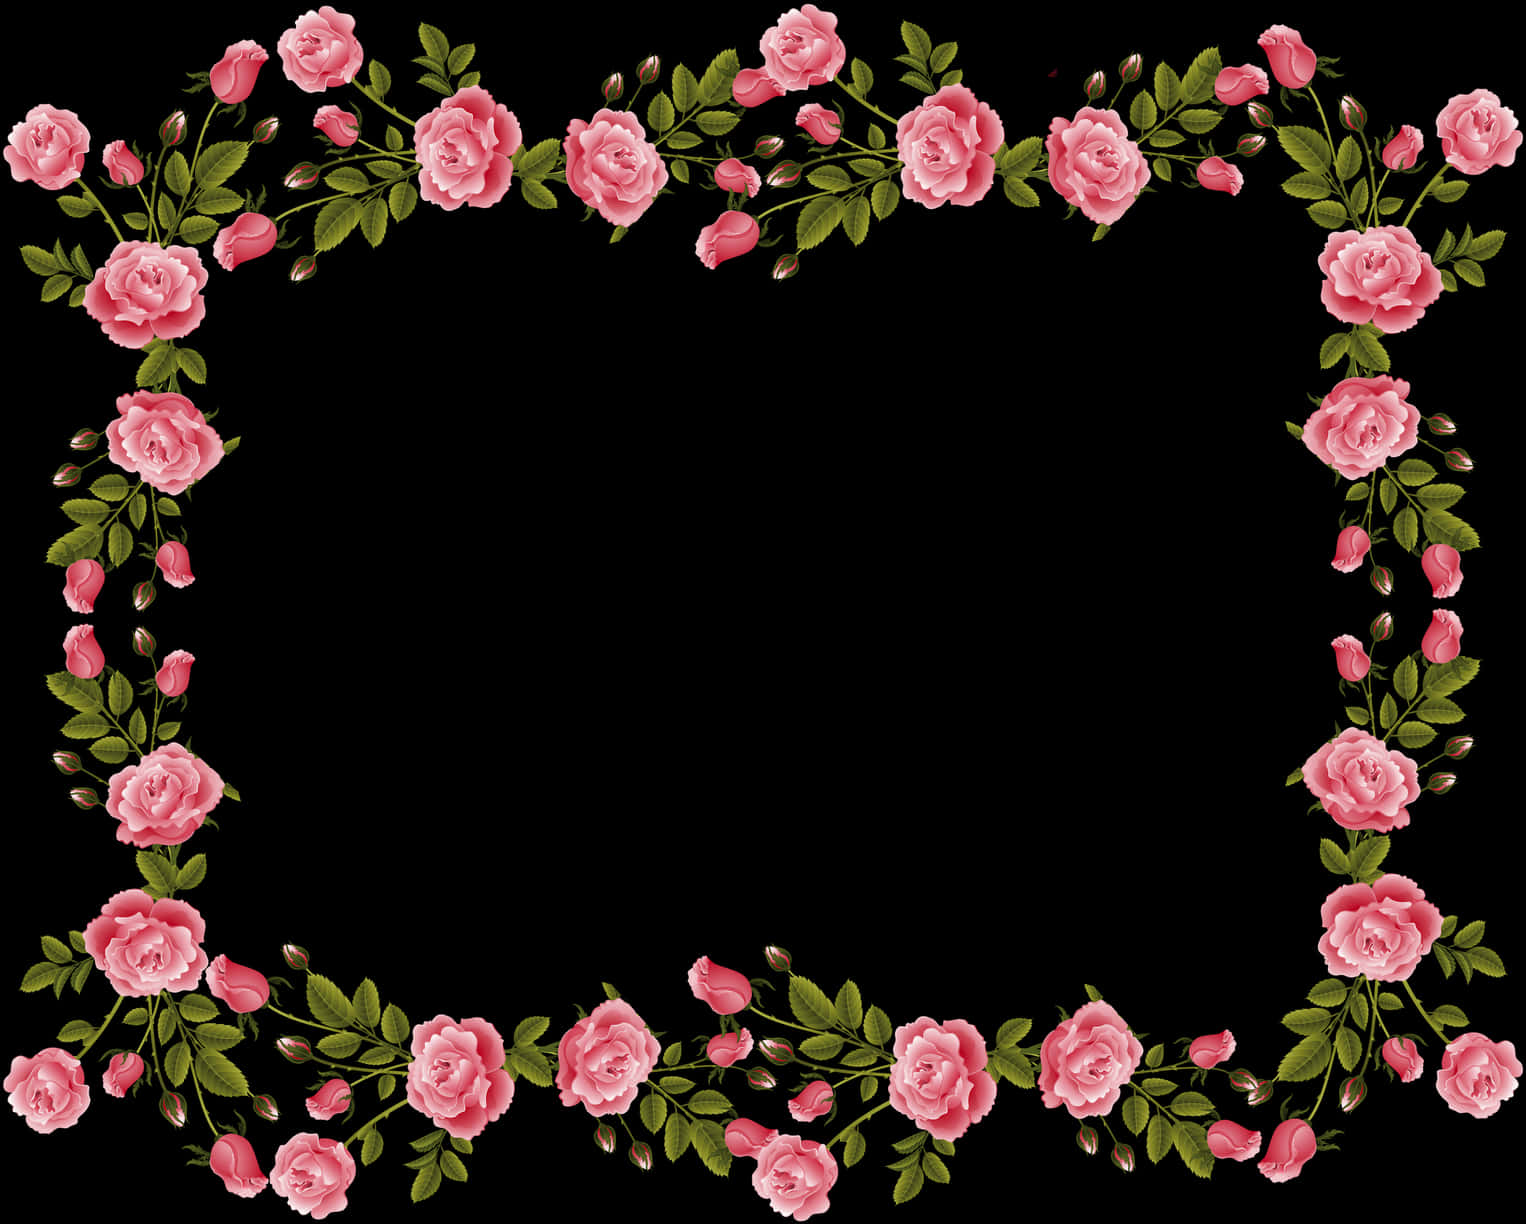 Pink Rose Frameon Black Background PNG image